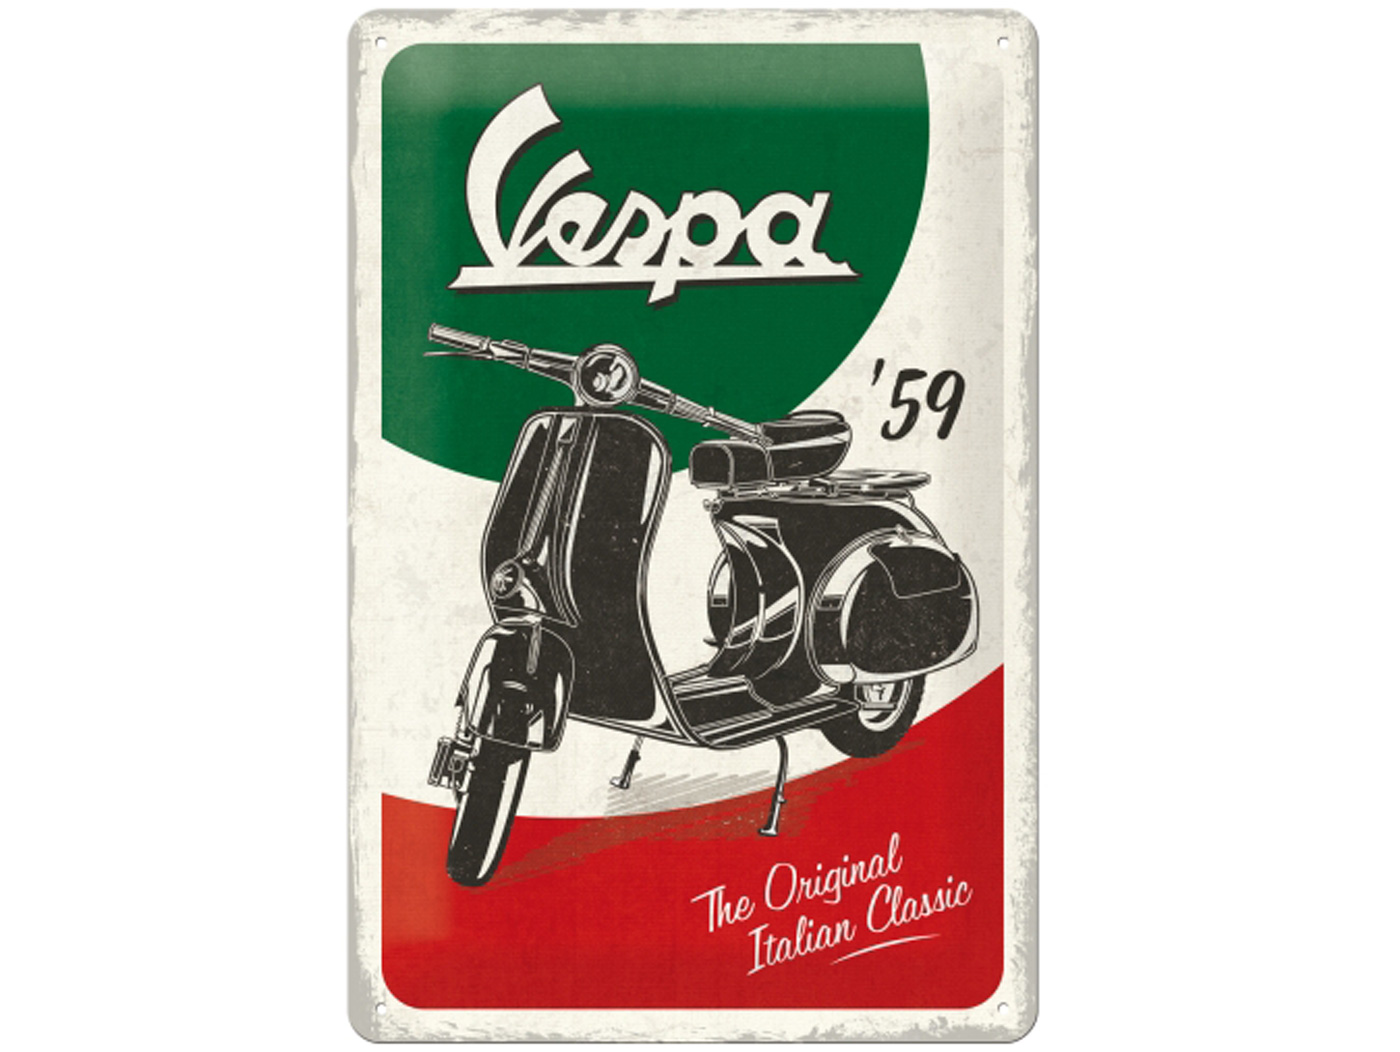 Μεταλλική ταμπέλα Vespa "The Original Italian Style" Ιδανικό για δώρο